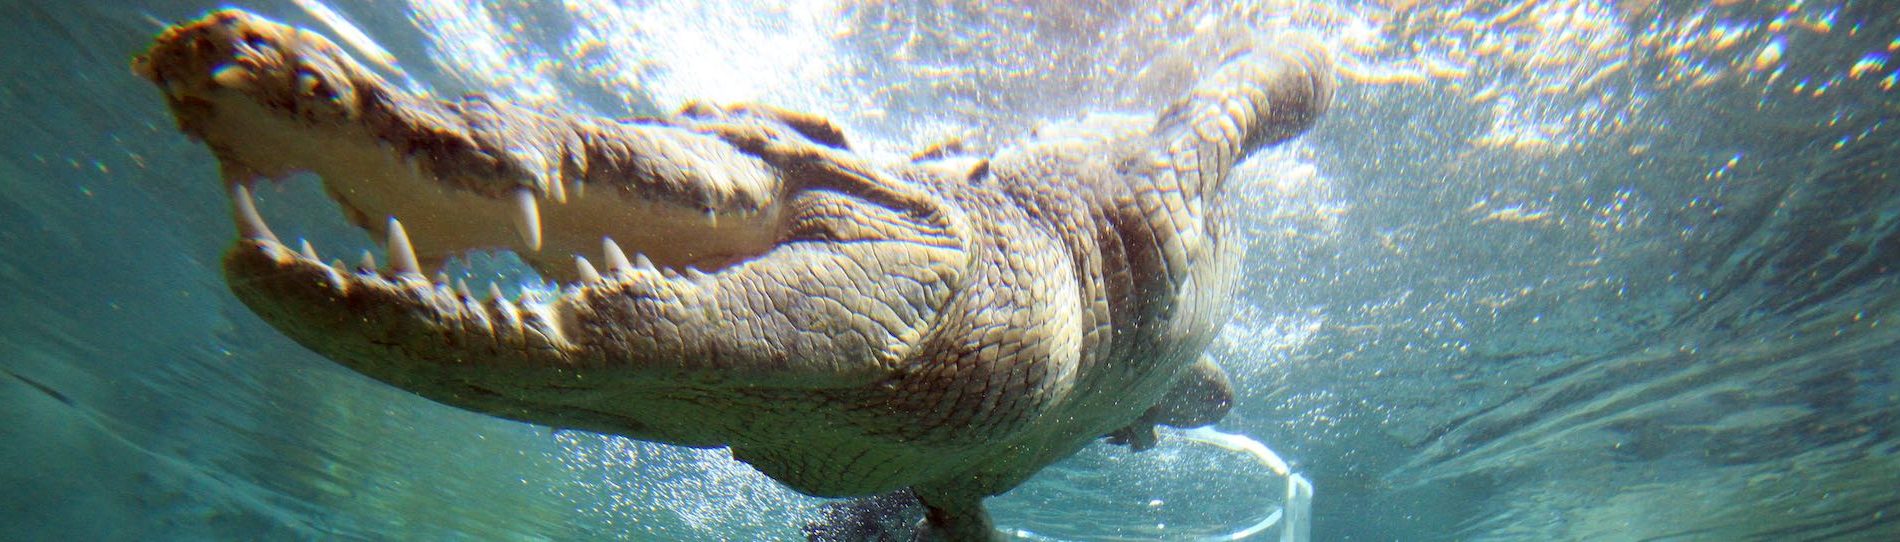 big swimming crocodile in darwin